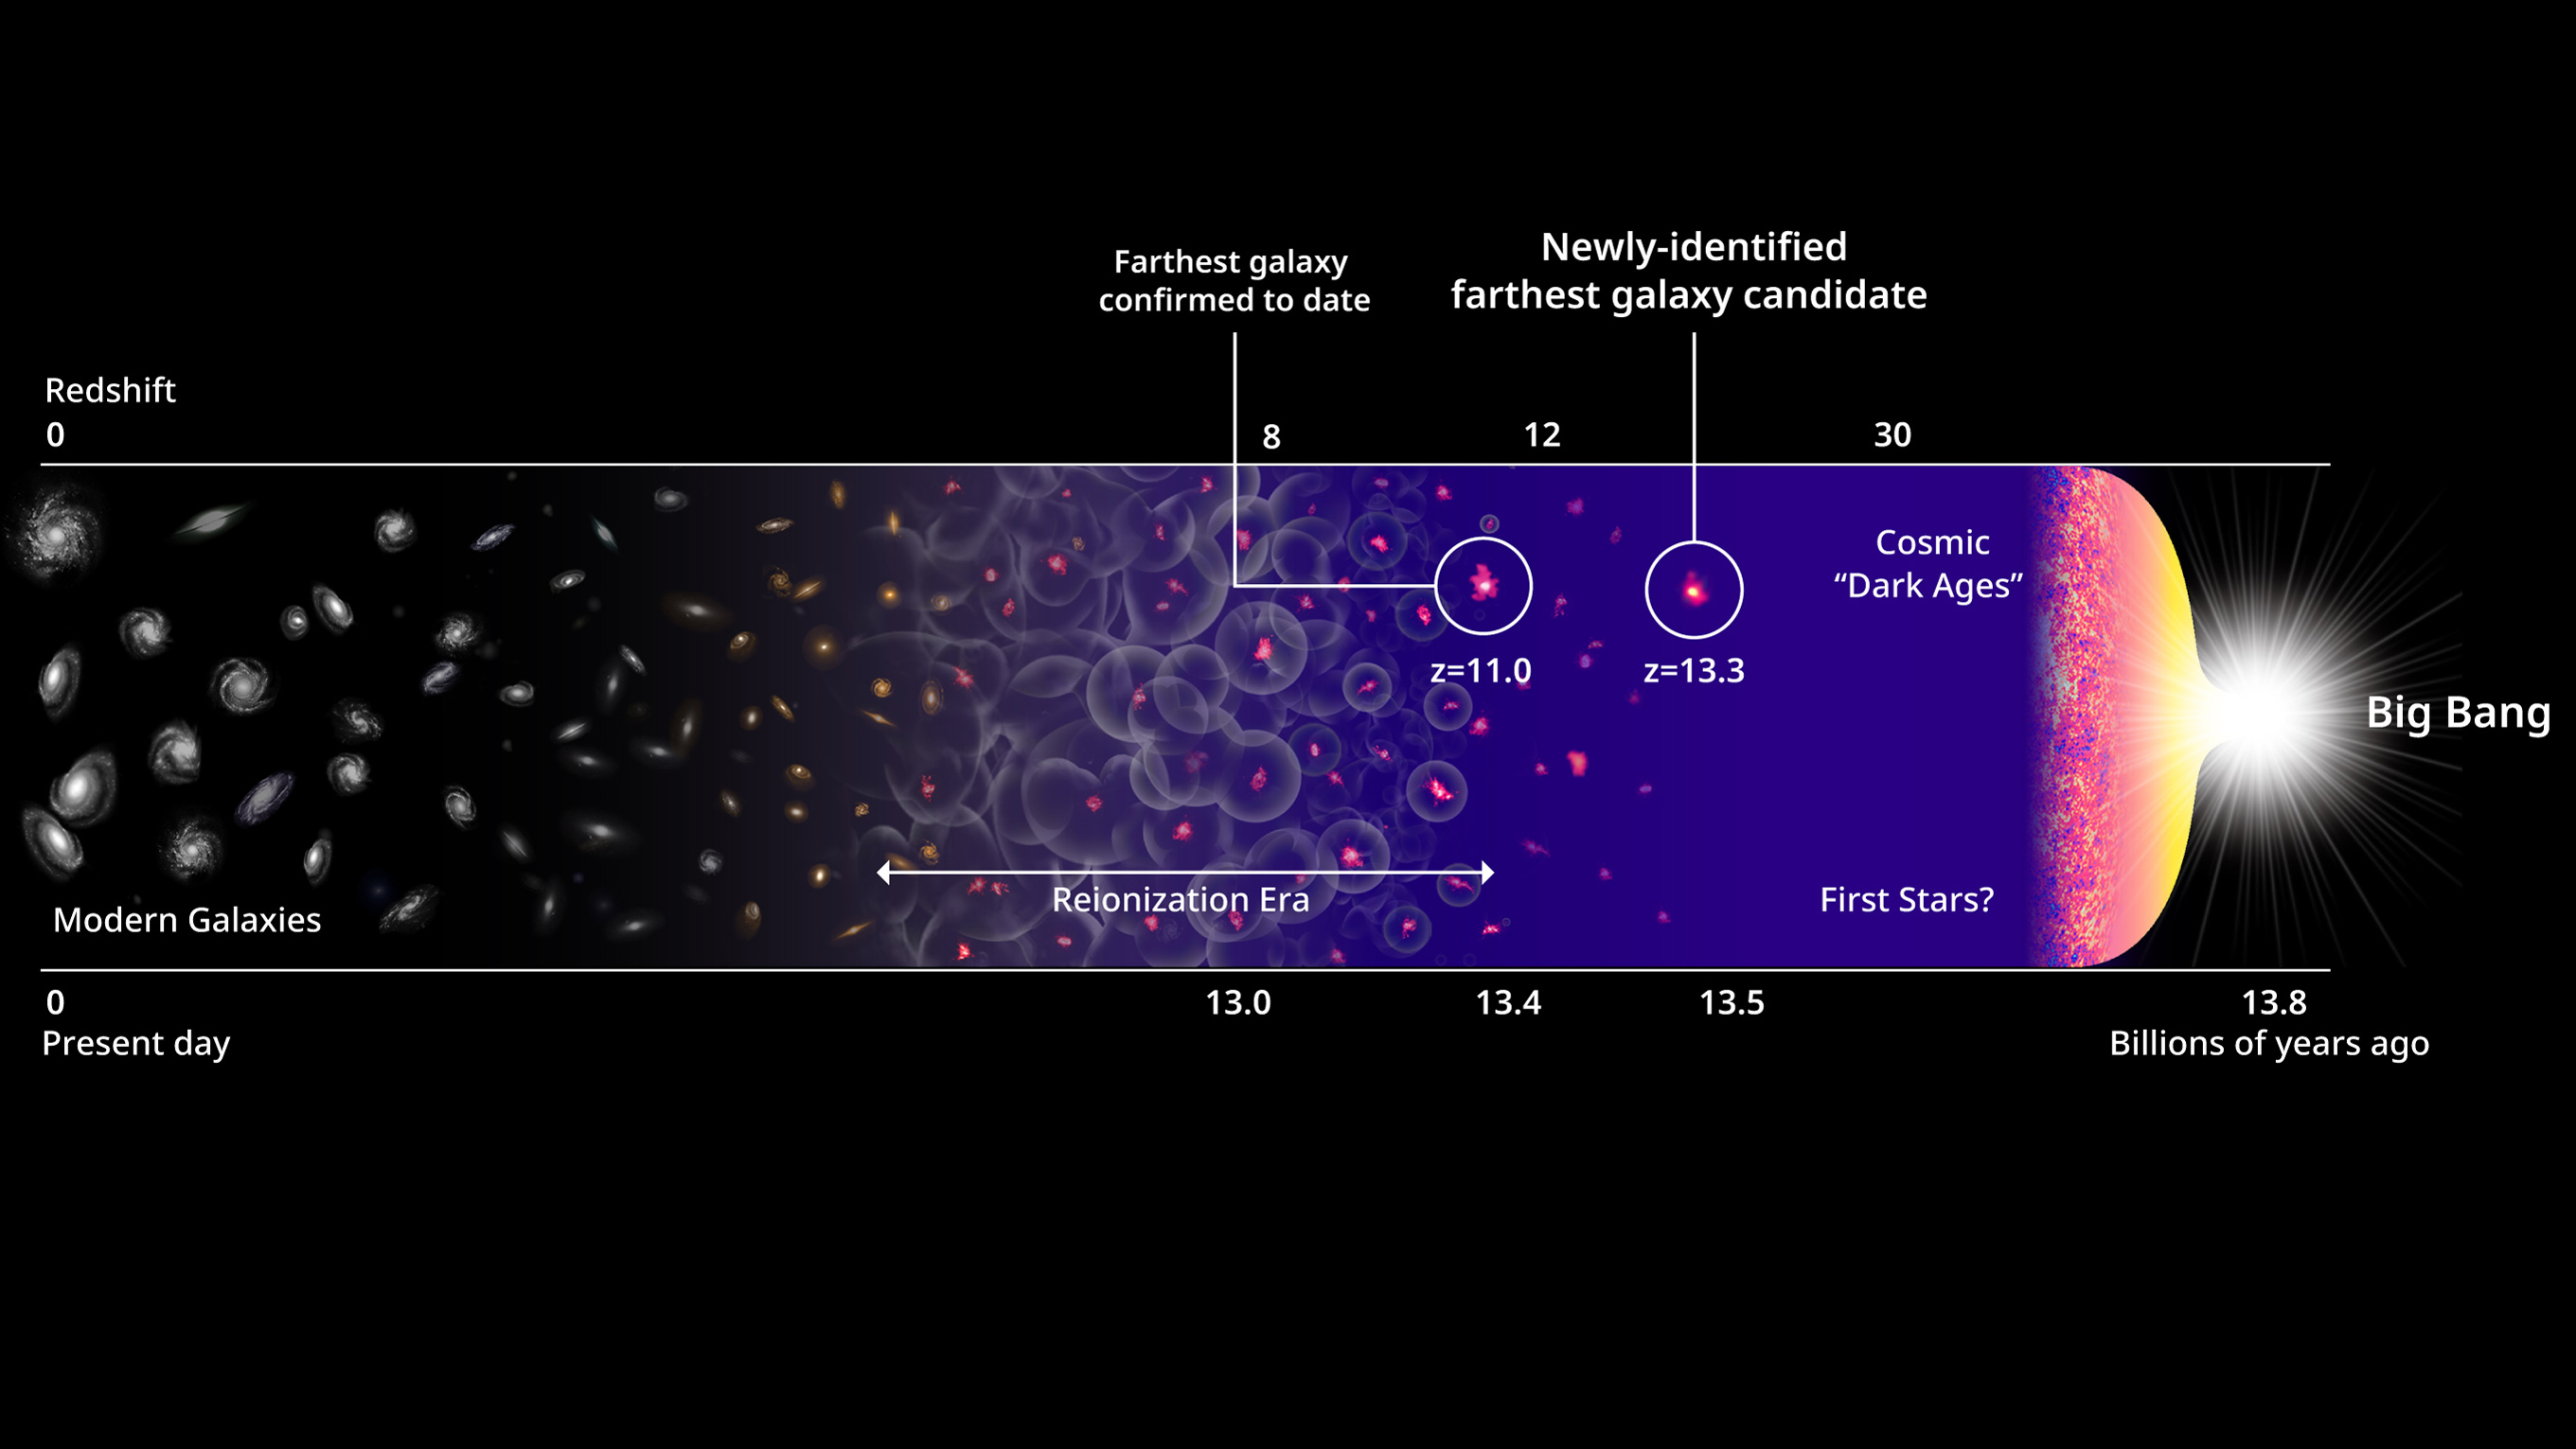 Le prime stelle e galassie si sono formate nelle prime centinaia di milioni di anni dopo il Big Bang, mostrato qui in questa illustrazione dell'evoluzione dell'universo.